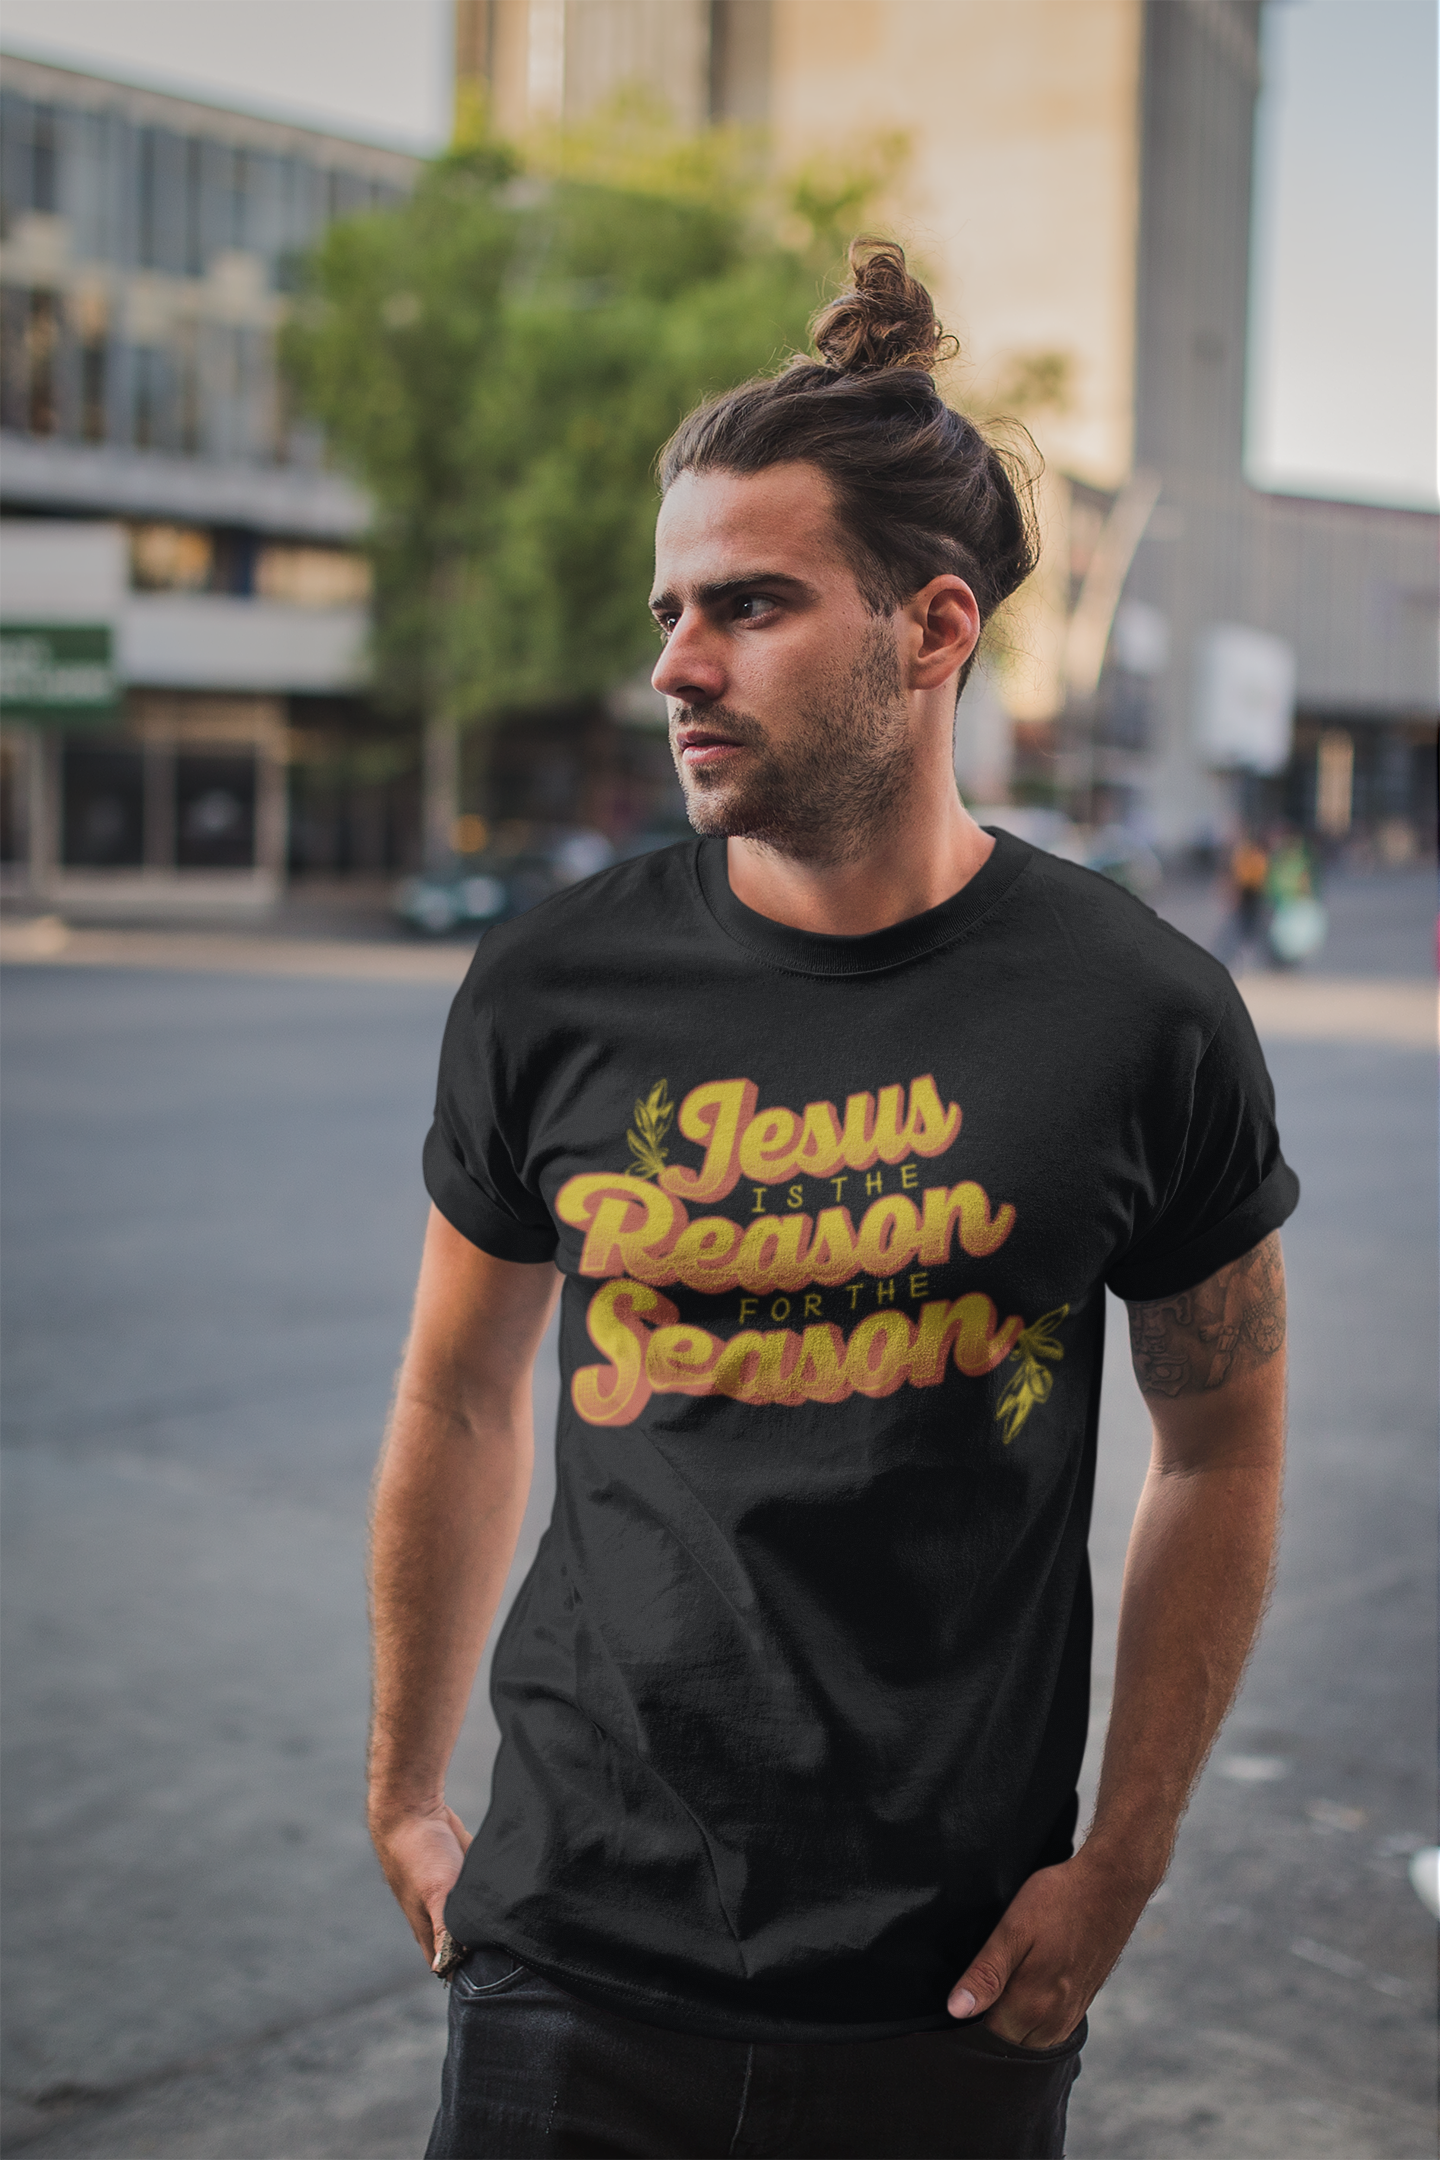 ULTRABASIC Men's Religious T-Shirt Jesus is the Reason for the Season - Christ Shirt